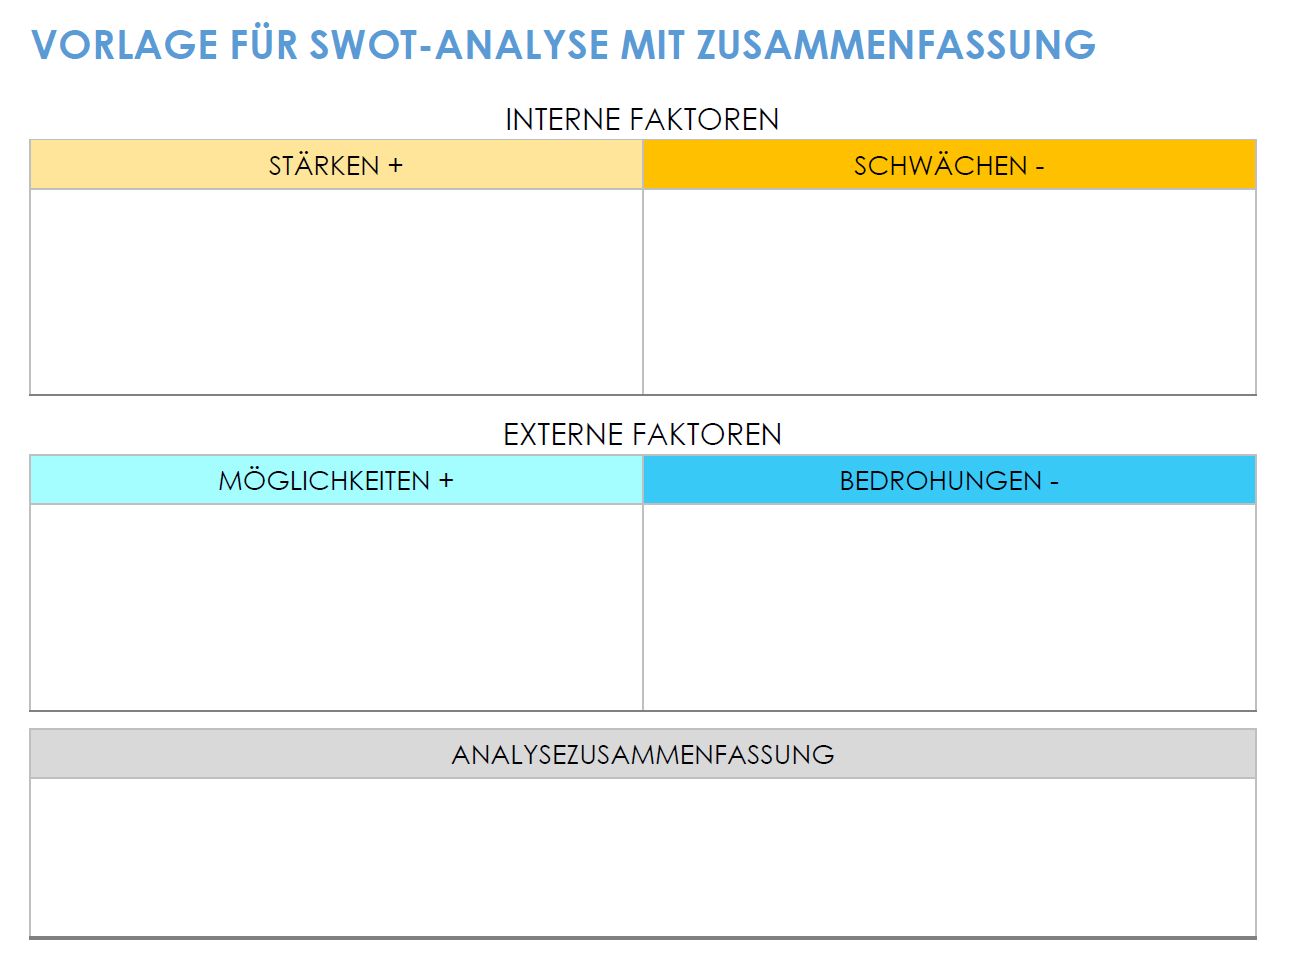 SWOT-Analyse mit Zusammenfassung